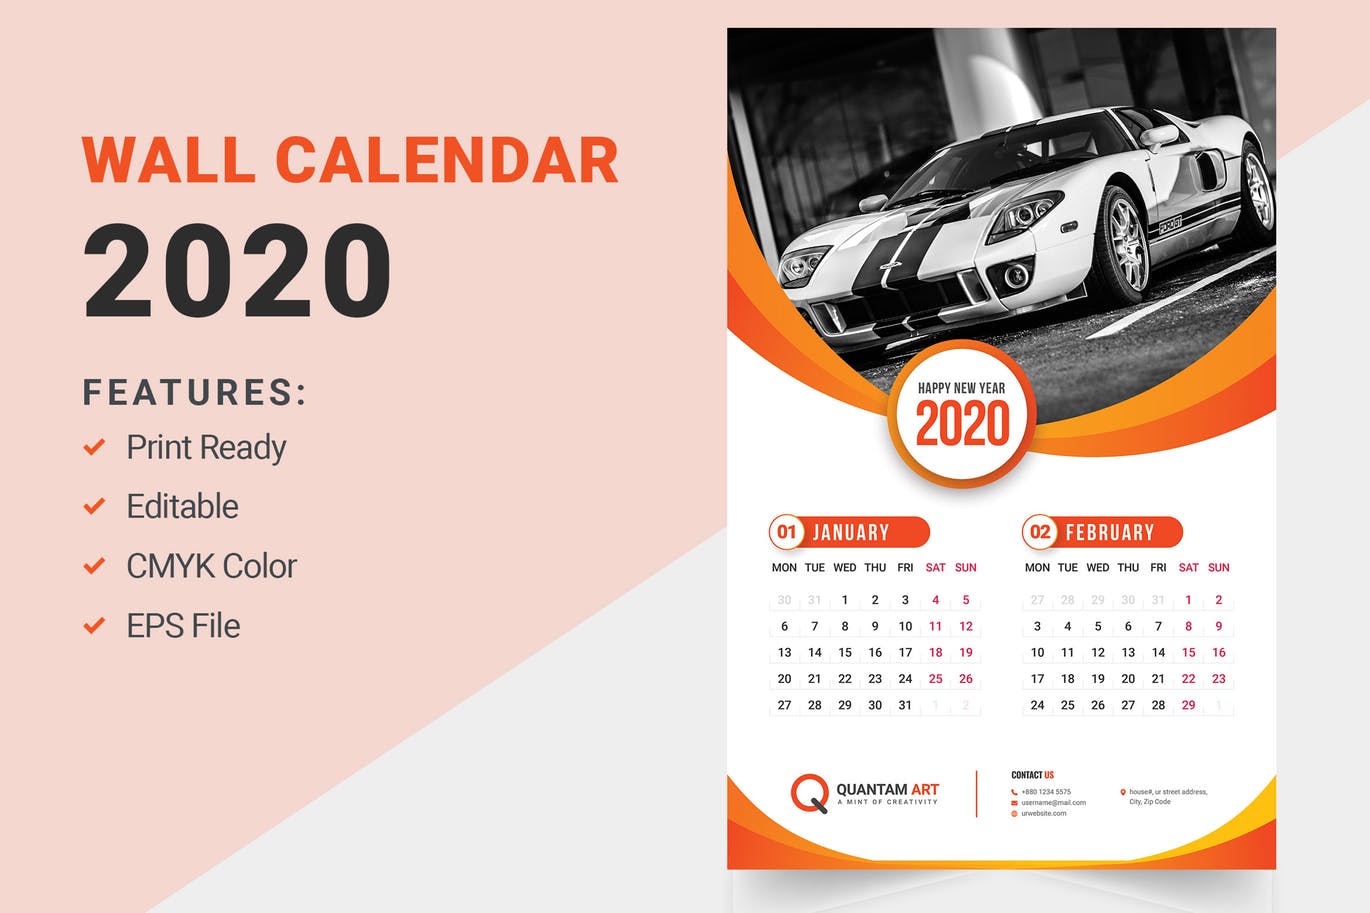 汽车主题2020年挂墙日历版式设计模板 Wall Calendar Design 2020插图